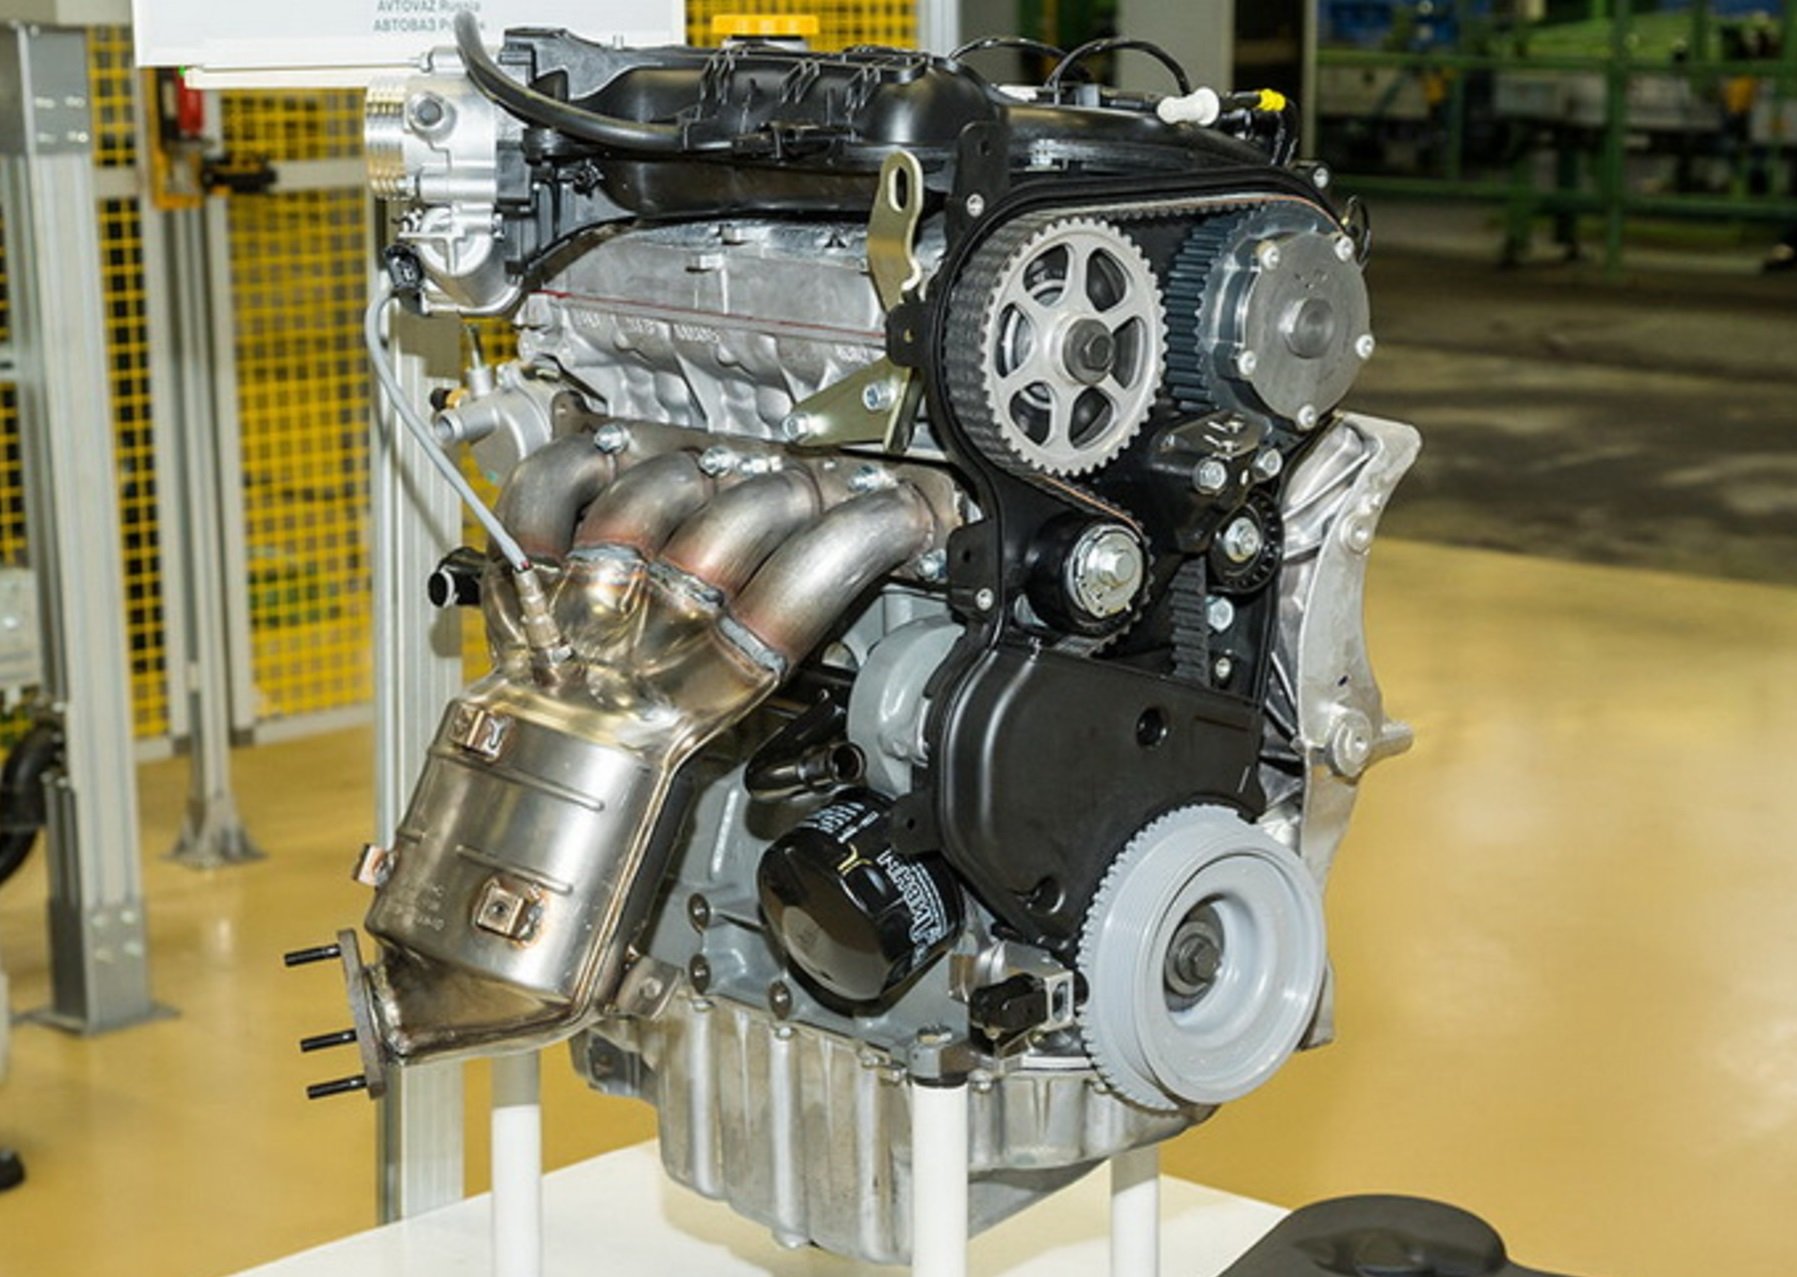 Двигатель ваз-21129 - описание и подробные характеристики